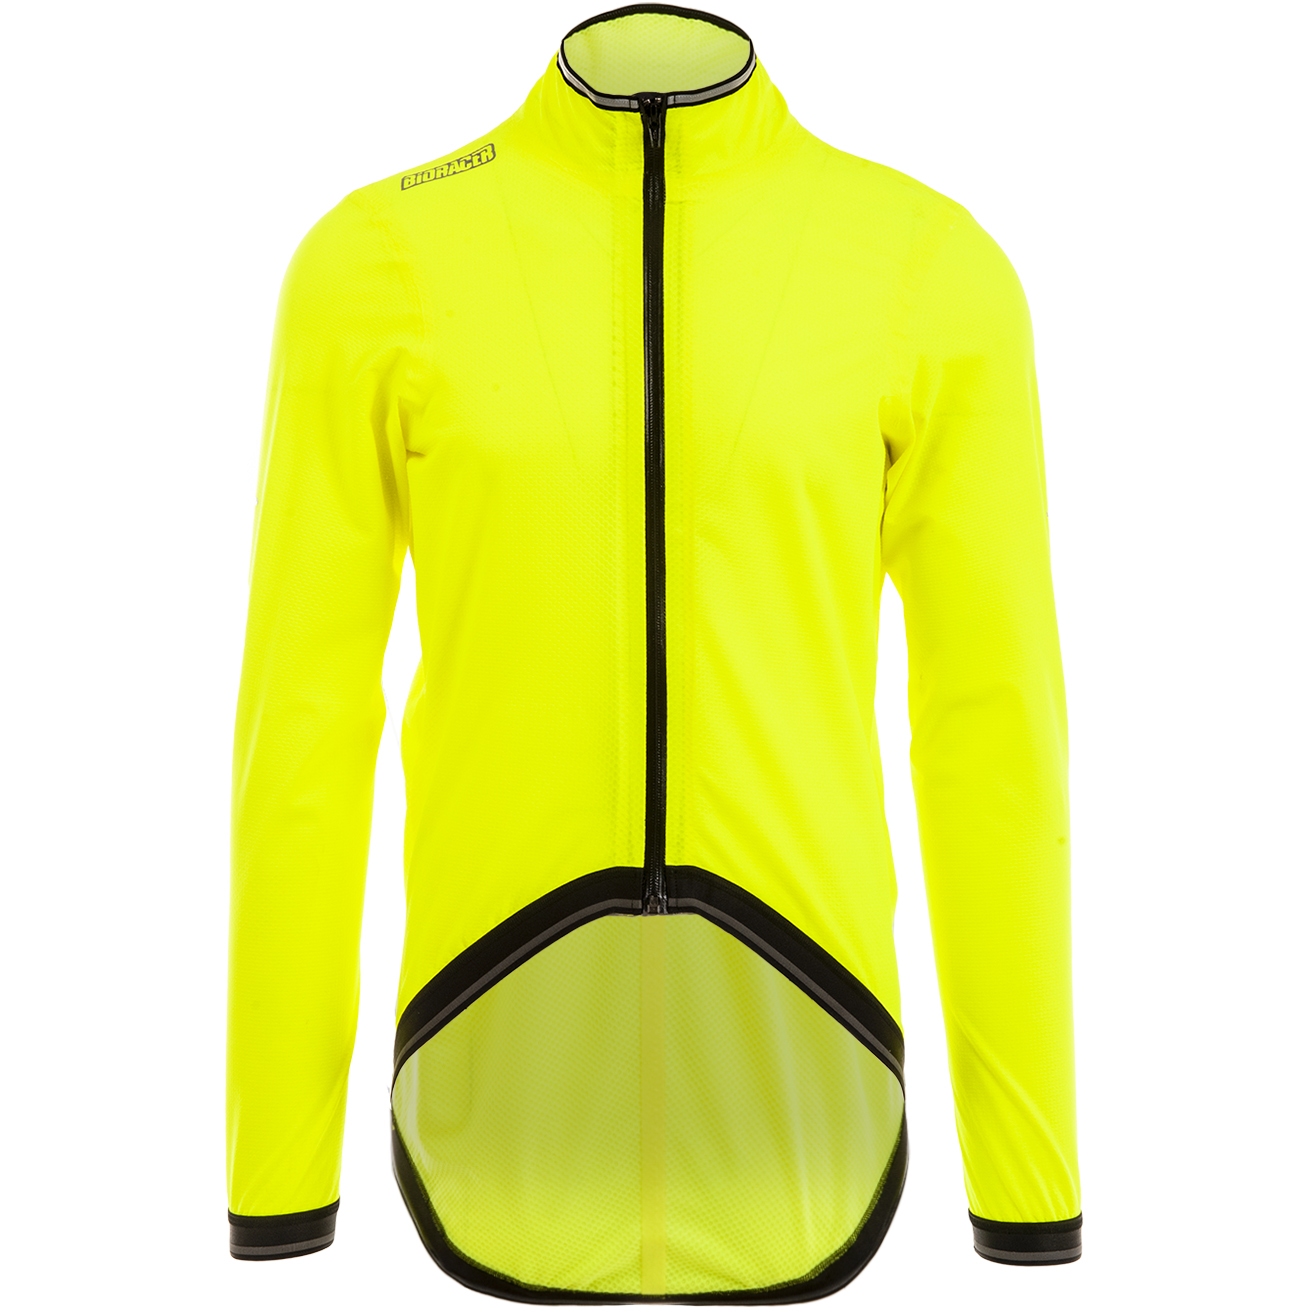 Produktbild von Bioracer Speedwear Concept Kaaiman Jacke - fluo yellow